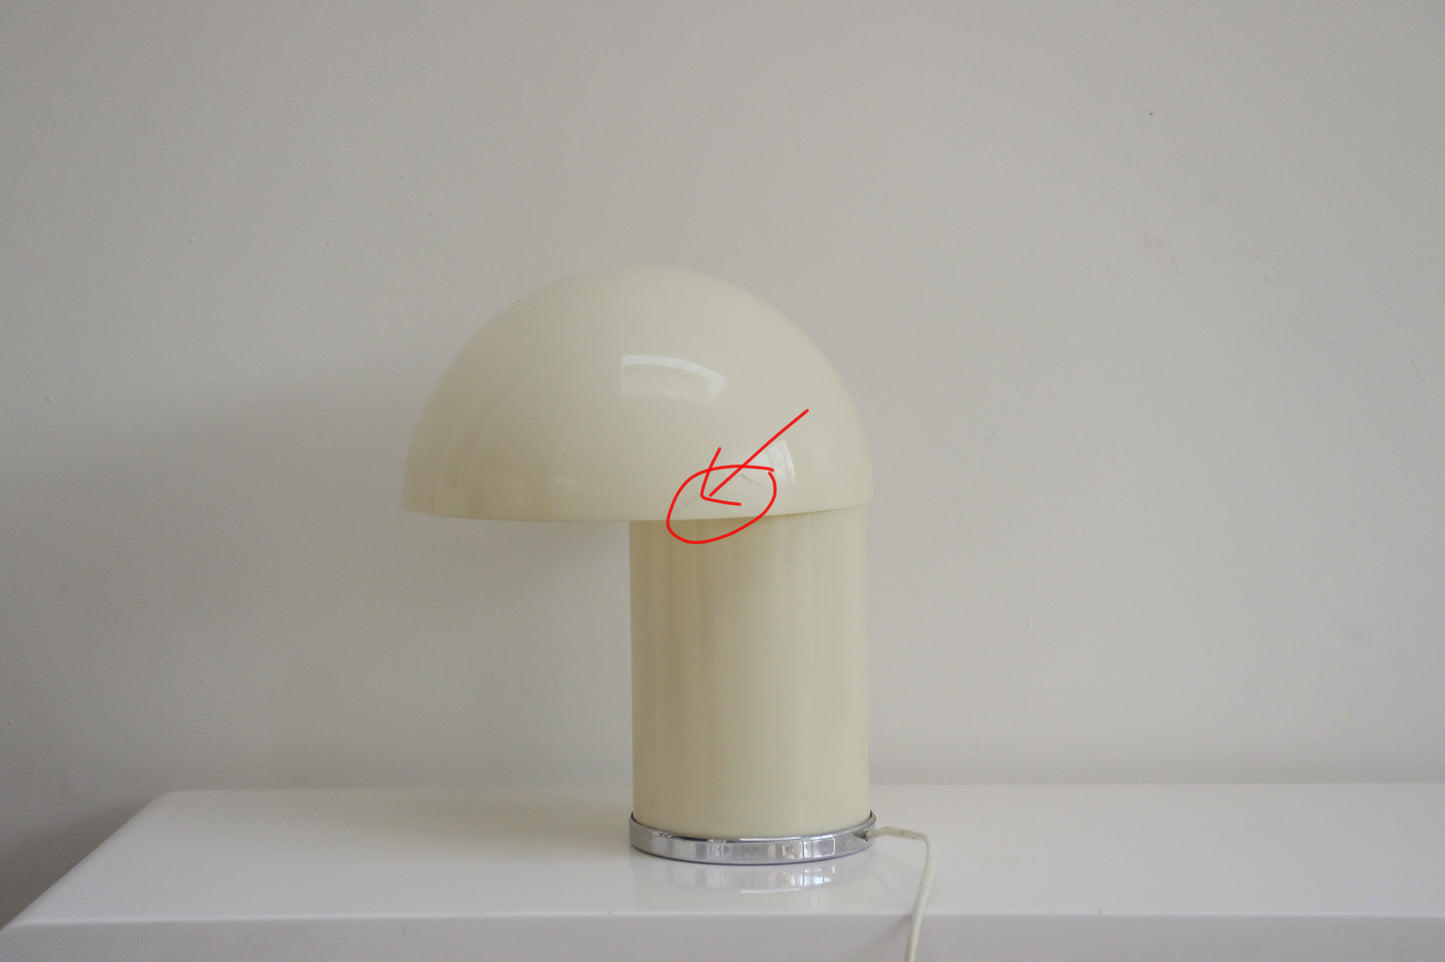 Rare Leila table lamp designed by Verner Panton and Marcello Siard for Collezioni Longato Padova, Italy.